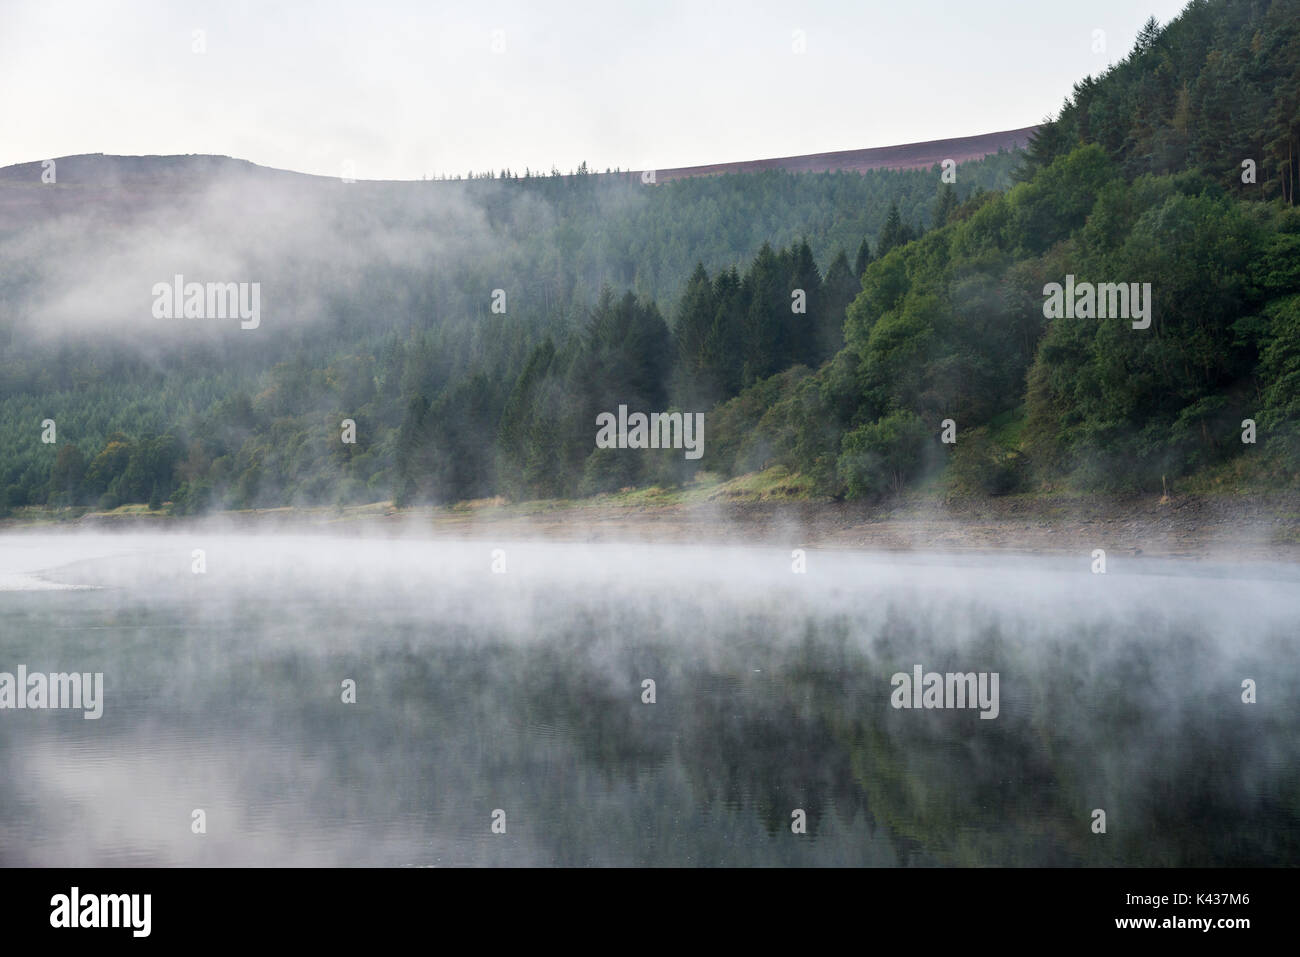 Atemberaubende September Morgen bei Ladybower Reservoir, Peak District, Derbyshire, England. Nebel über der Wasseroberfläche treiben. Stockfoto